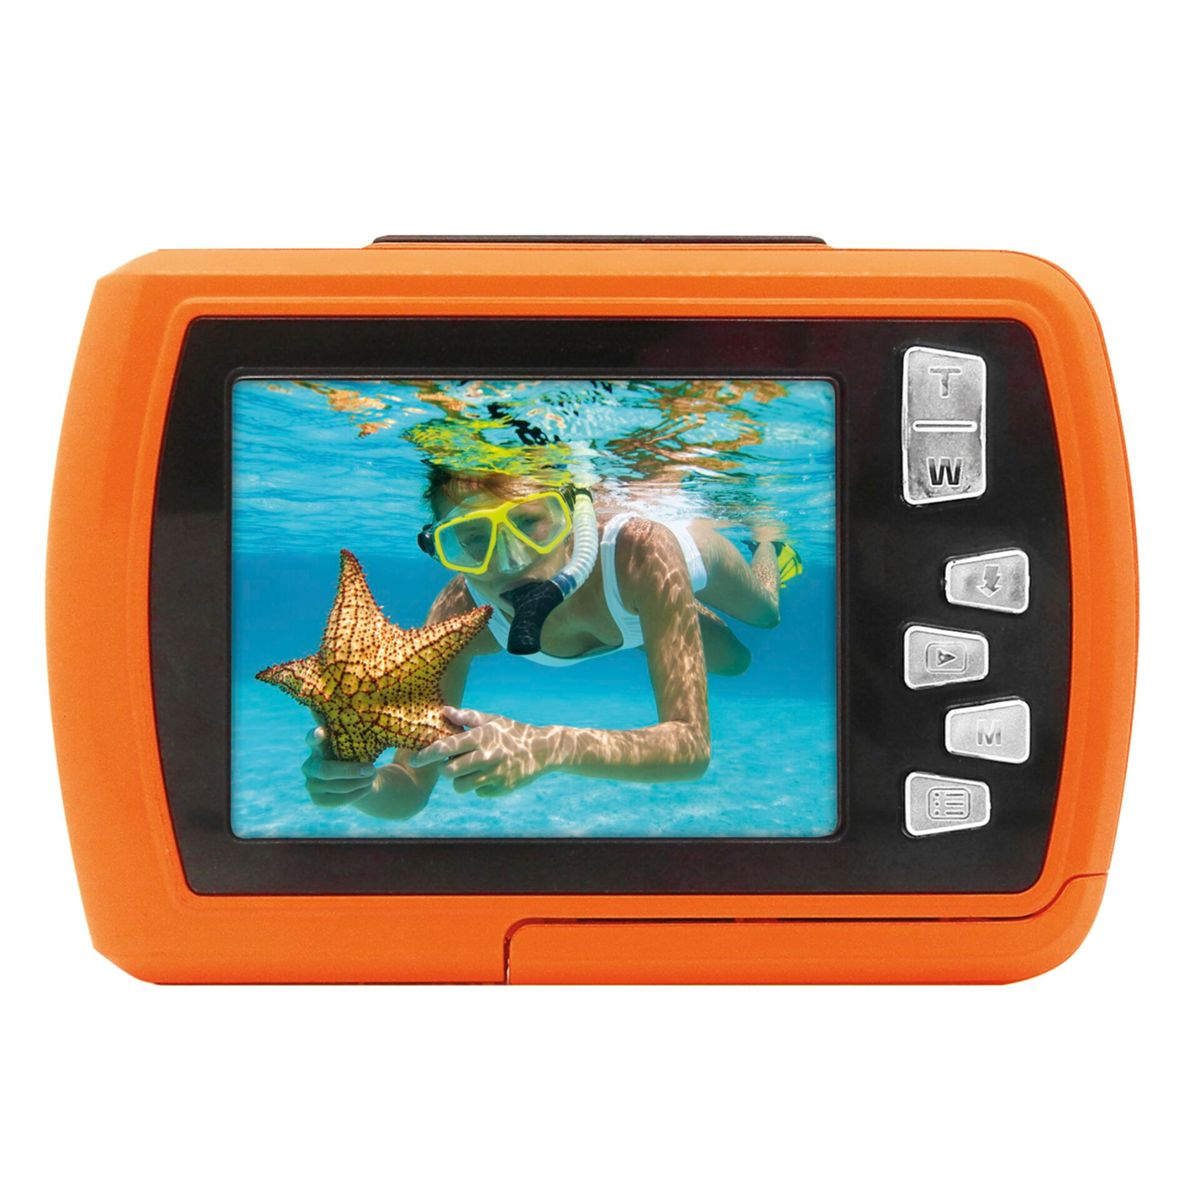 EASYPIX orange Aquapix Splash Orange W2024 Unterwasserkamera